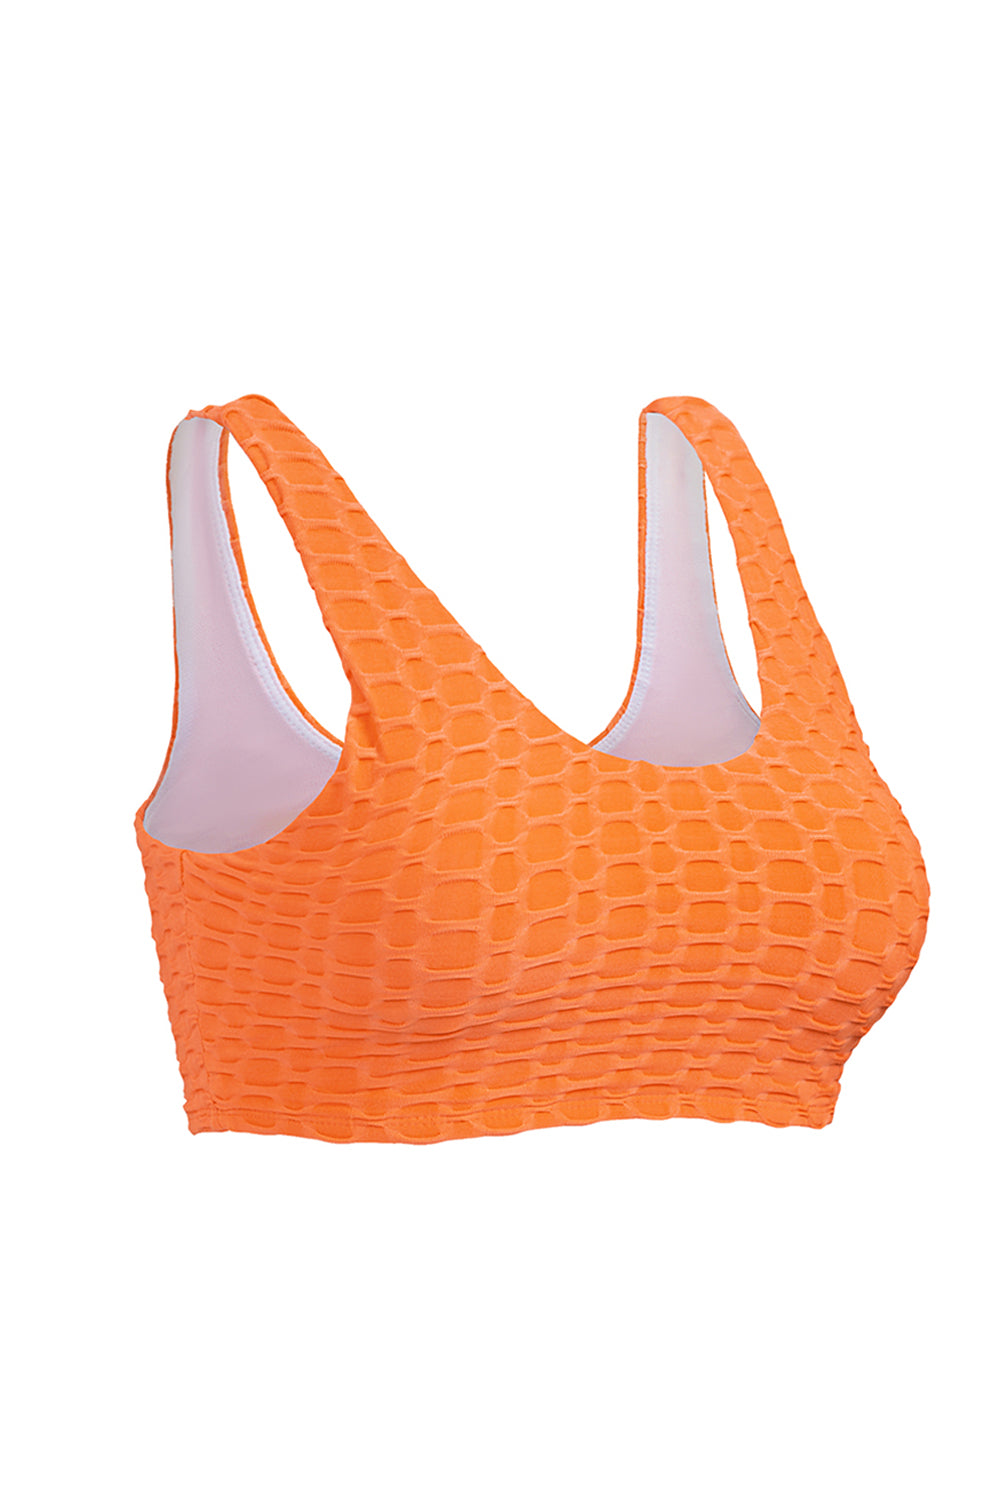 Haut de maillot de bain texturé orange Honey Comb